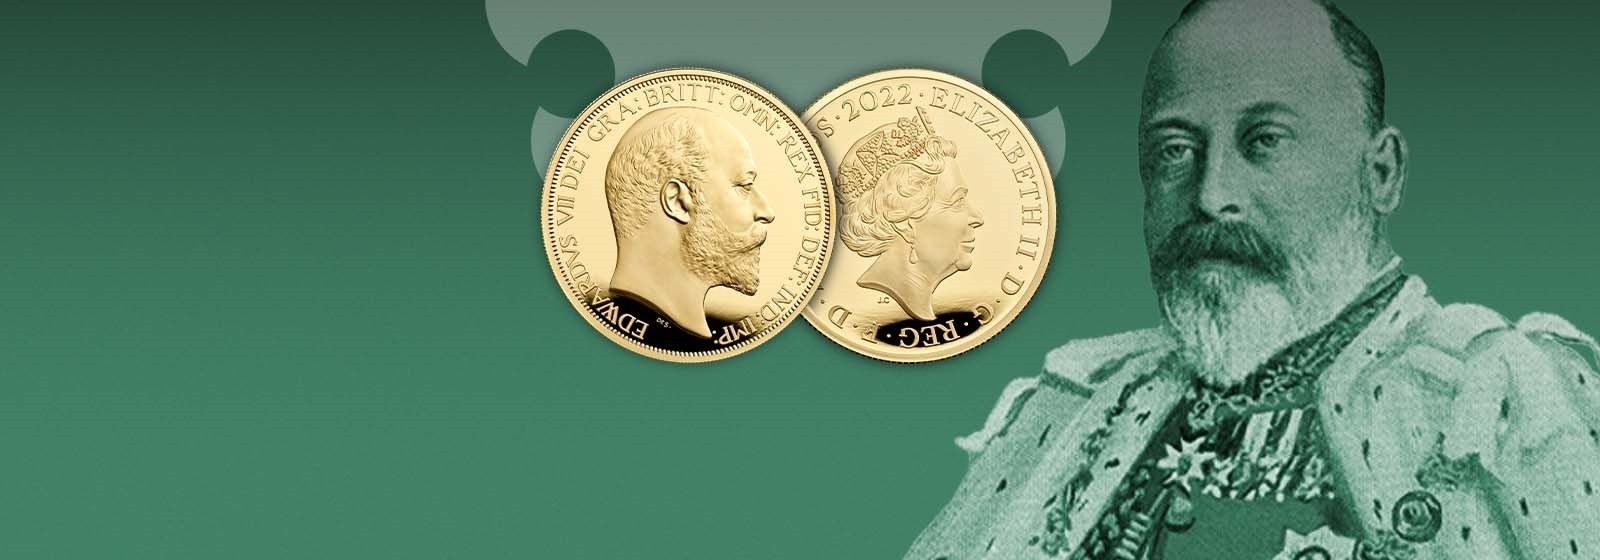 Royal Mint King Edward VII 2022 (shop illustration) (zoom)